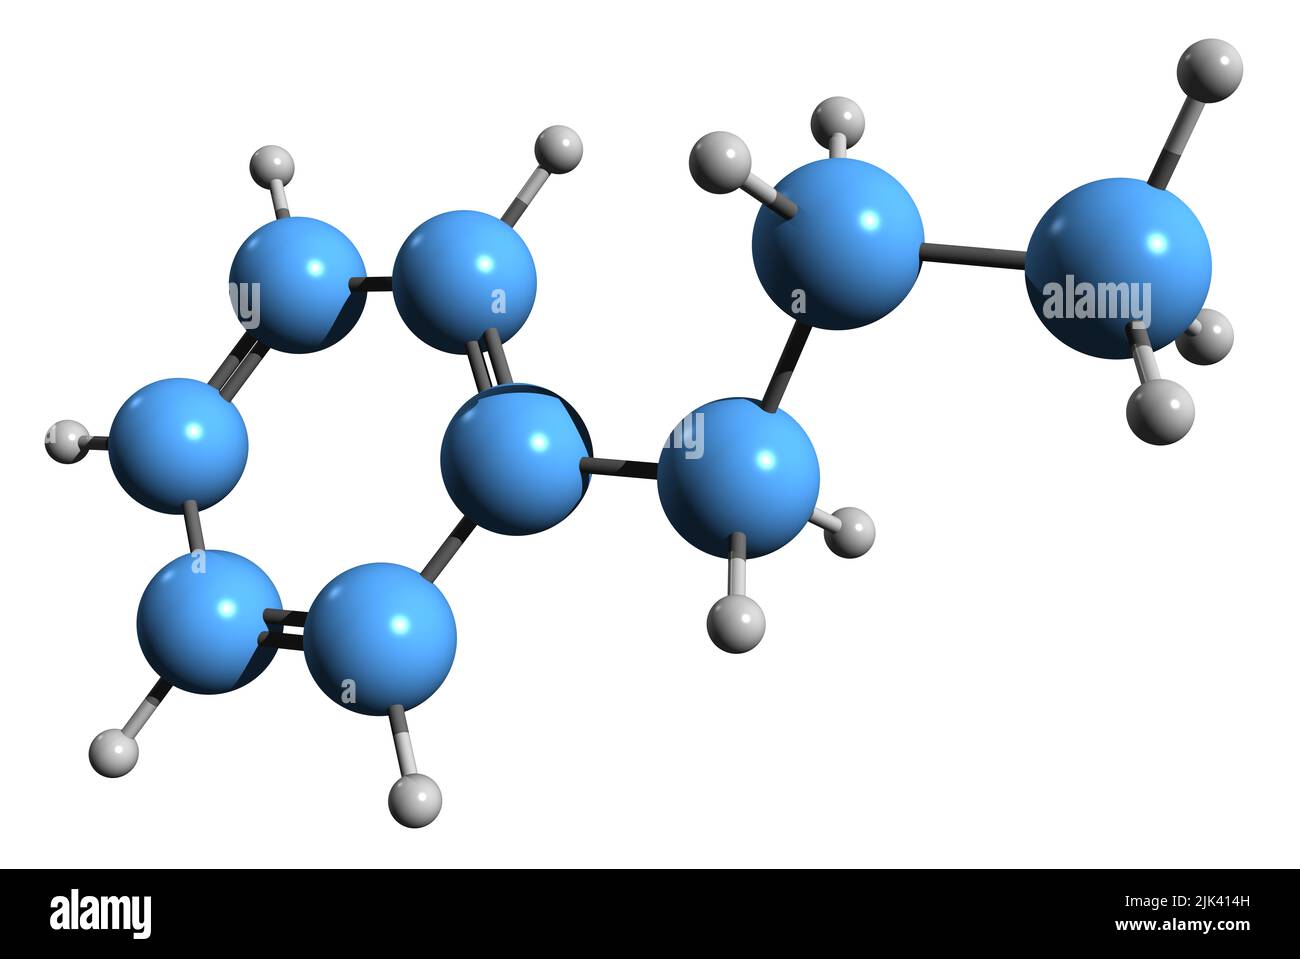 3D imagen de la fórmula esquelética del propilbenceno - estructura química molecular del hidrocarburo aromático C6H5CH2CH2CH3 aislado sobre fondo blanco Foto de stock